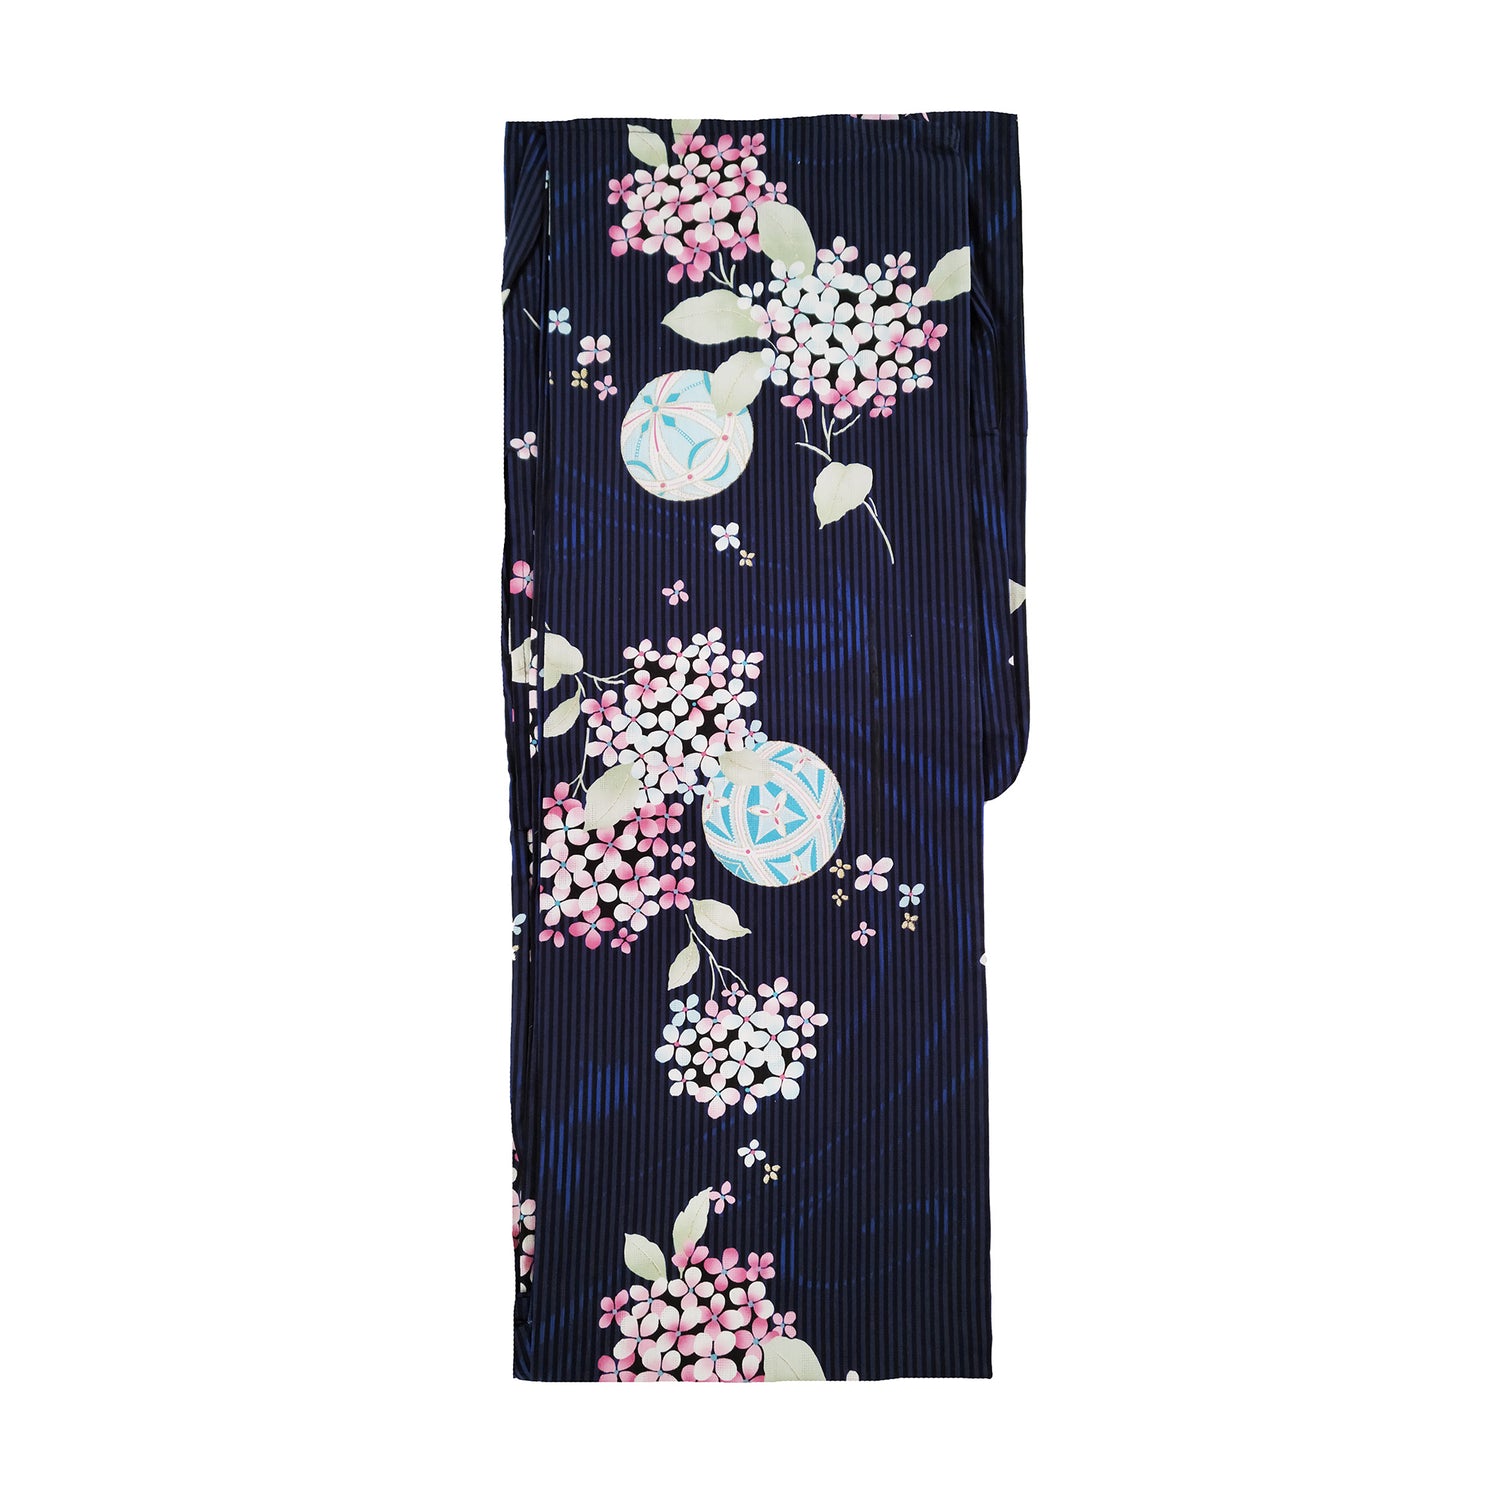 Women's Japanese Yukata Kimono - Pink Hydrangea, Temari Balls, and Goldfish in Navy Blue